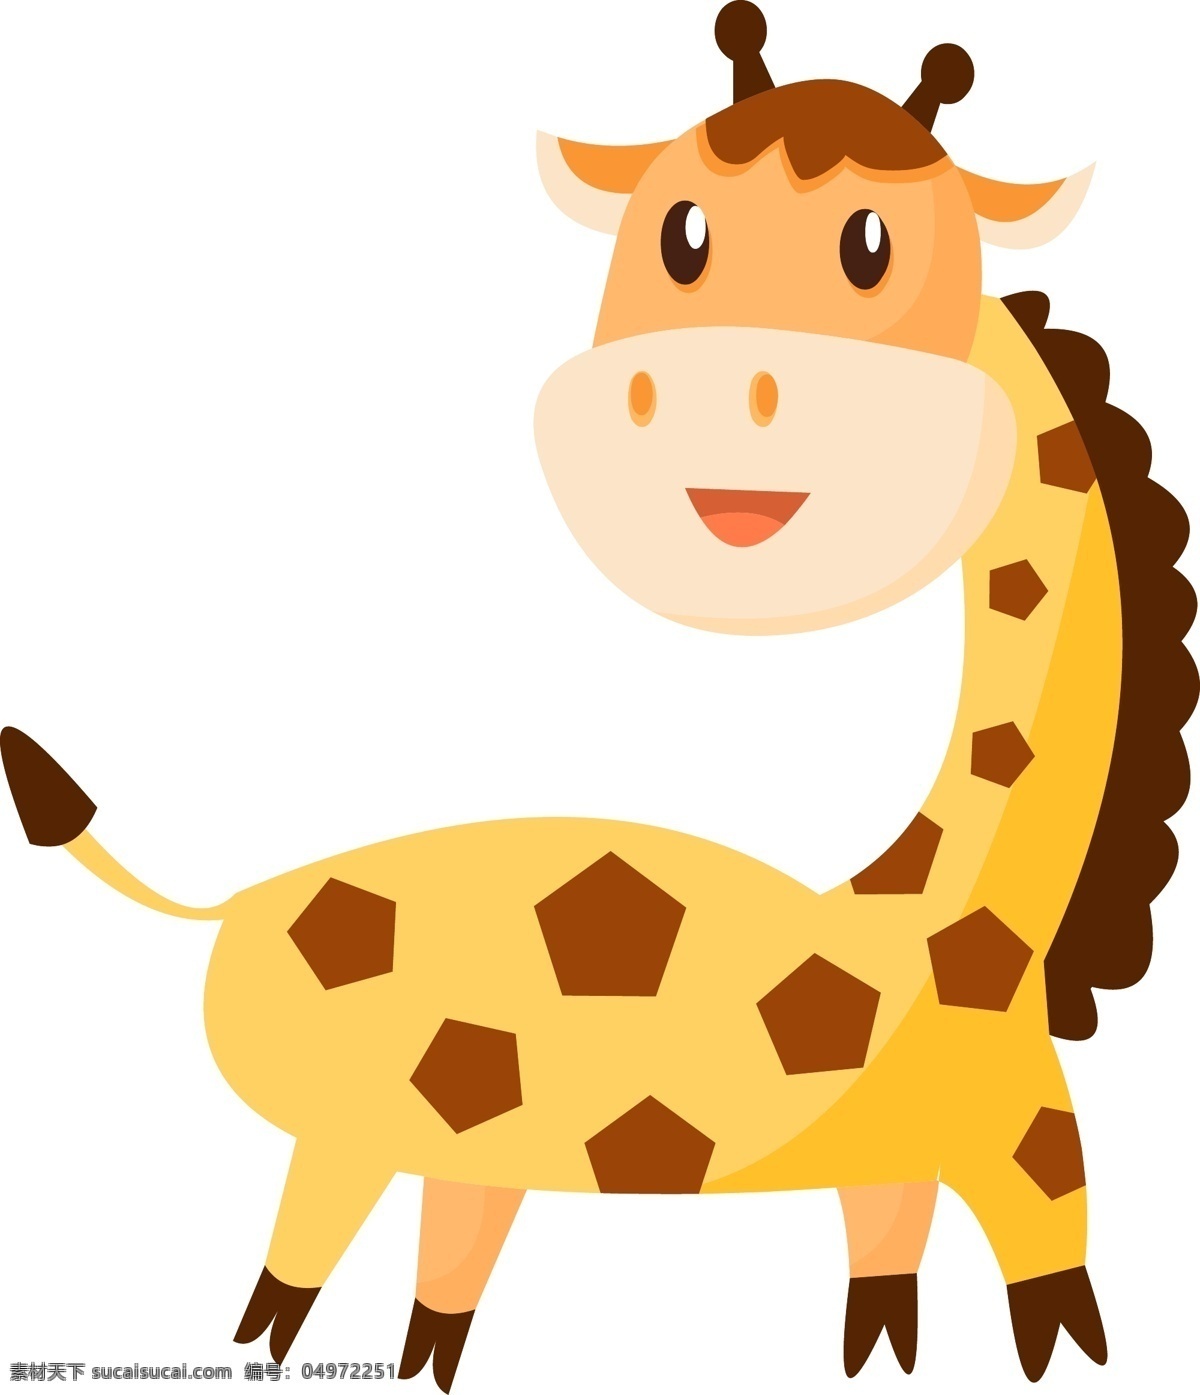 手绘 动物 卡通 扁平 元素 可爱 长颈鹿 手绘卡通 卡通动物 手绘动物 可爱小动物 扁平卡通